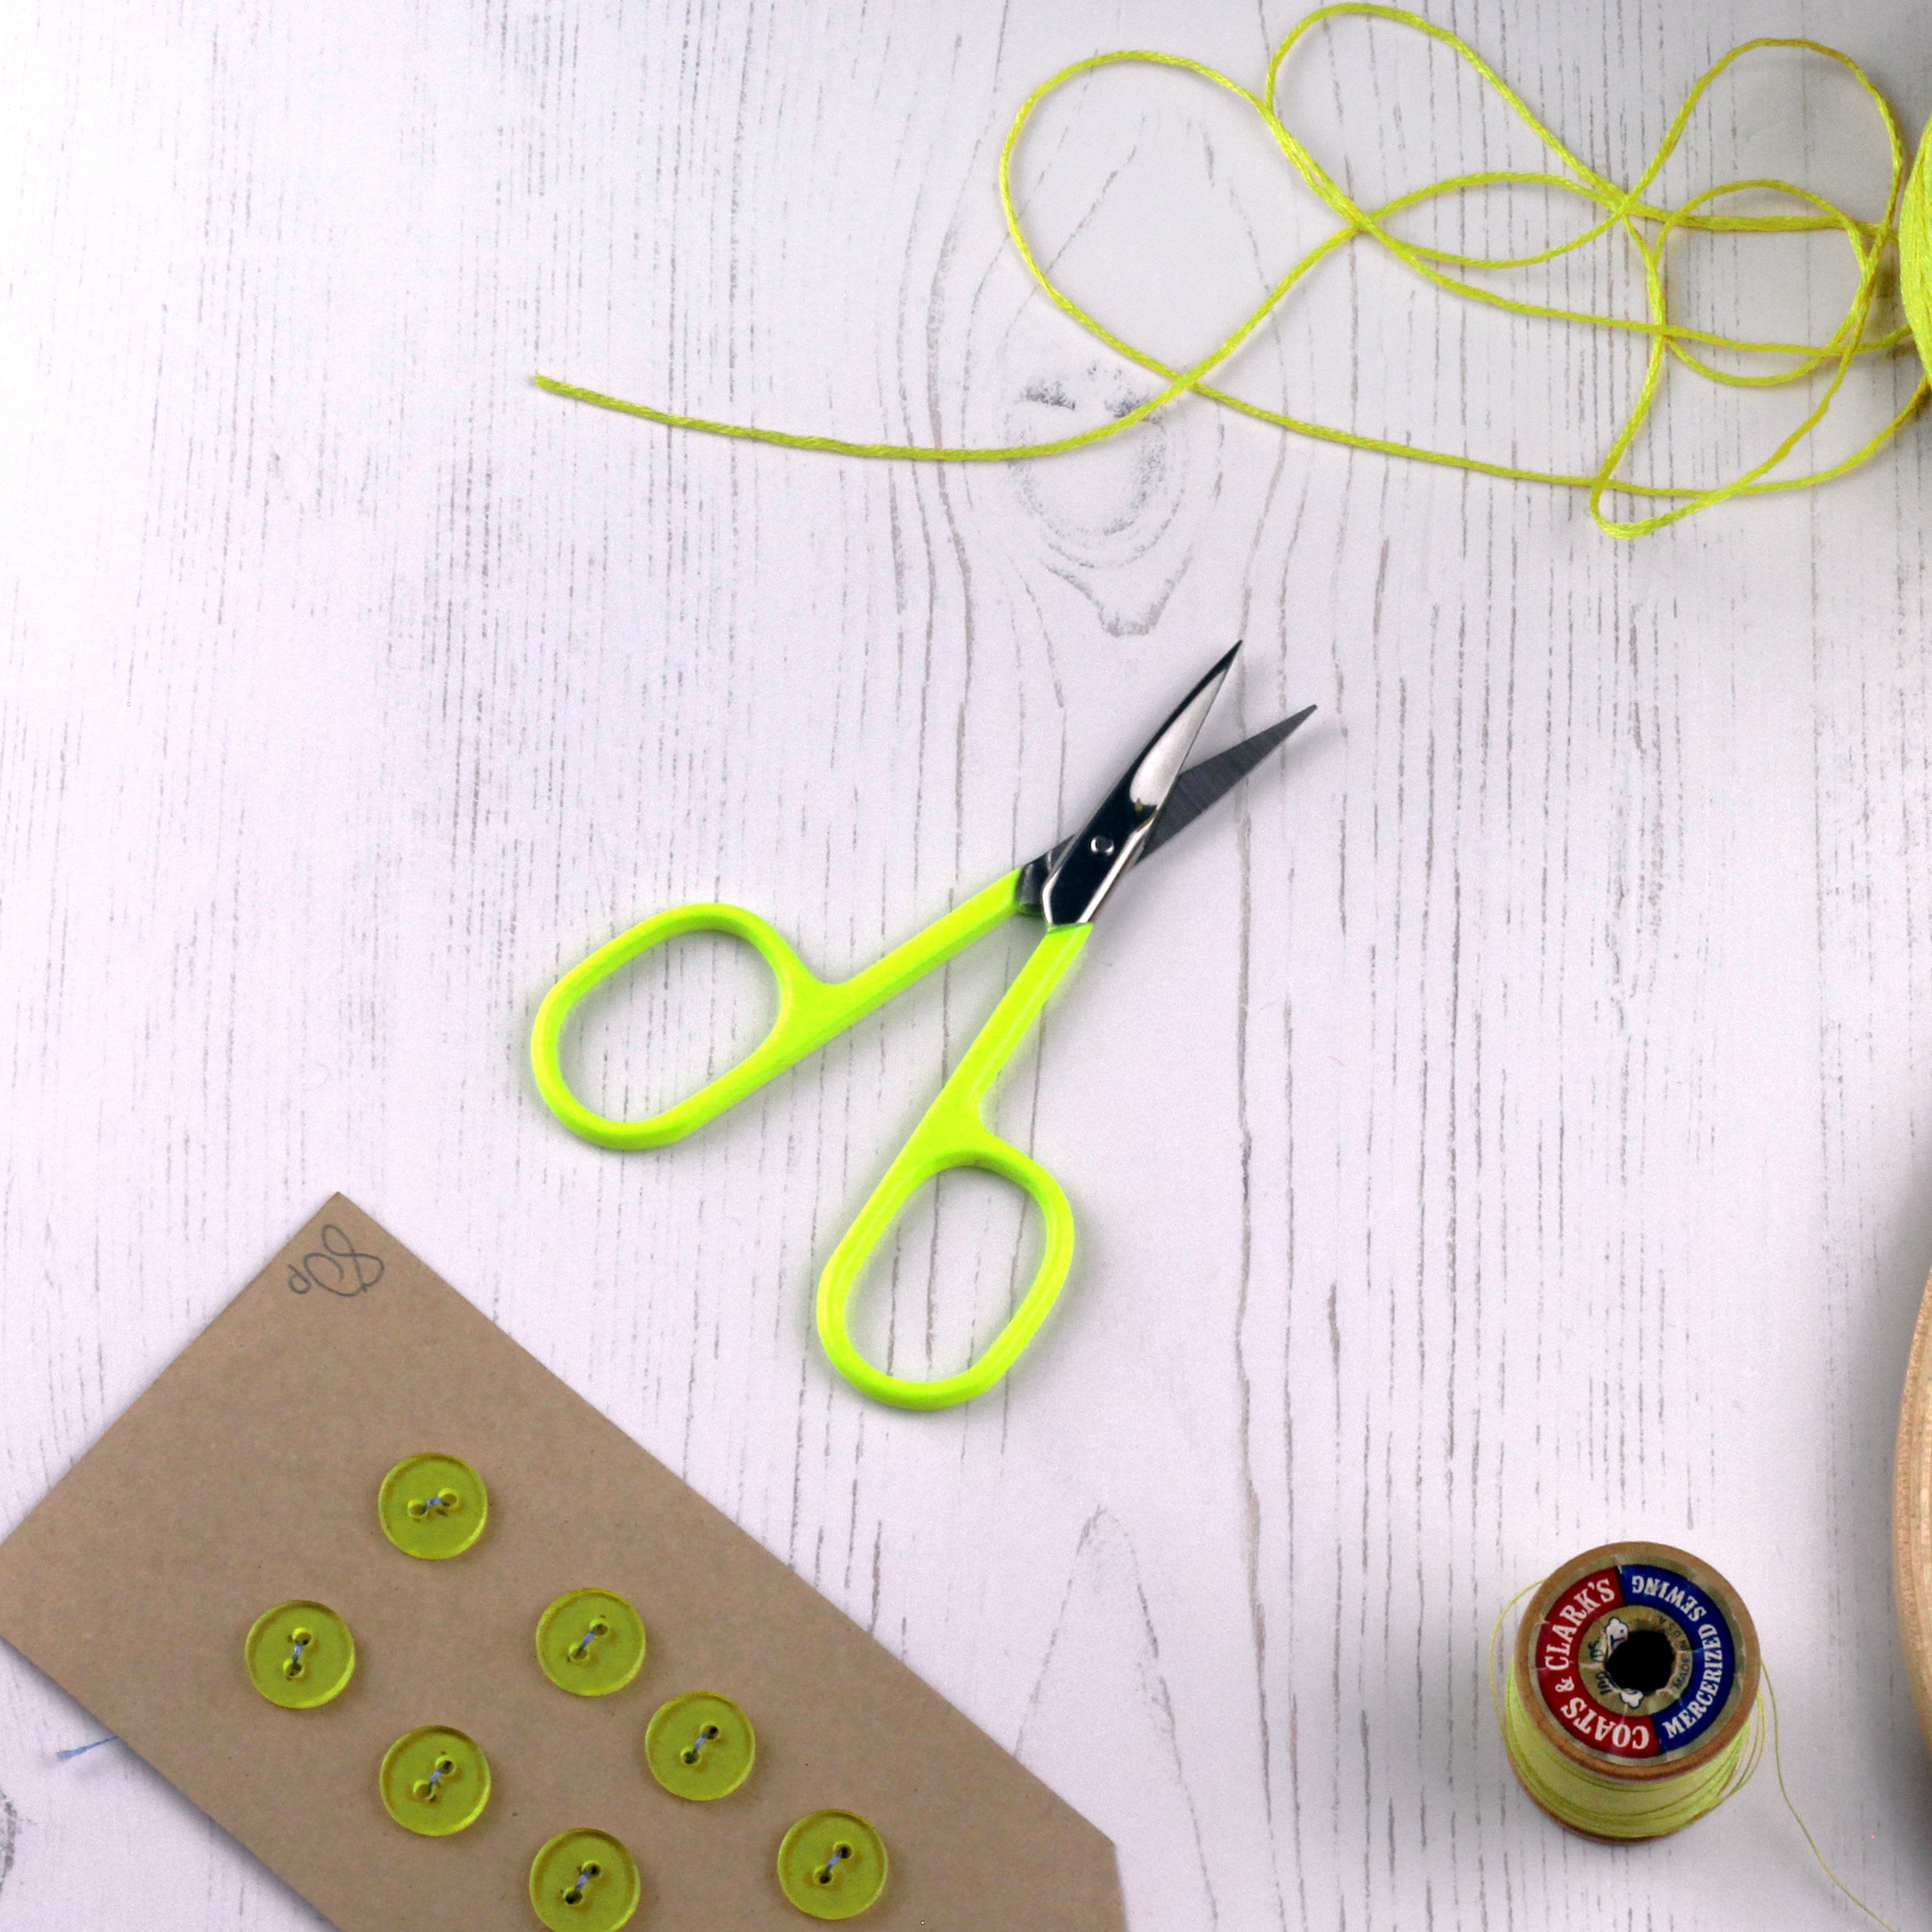 Neon Yellow Embroidery Scissors